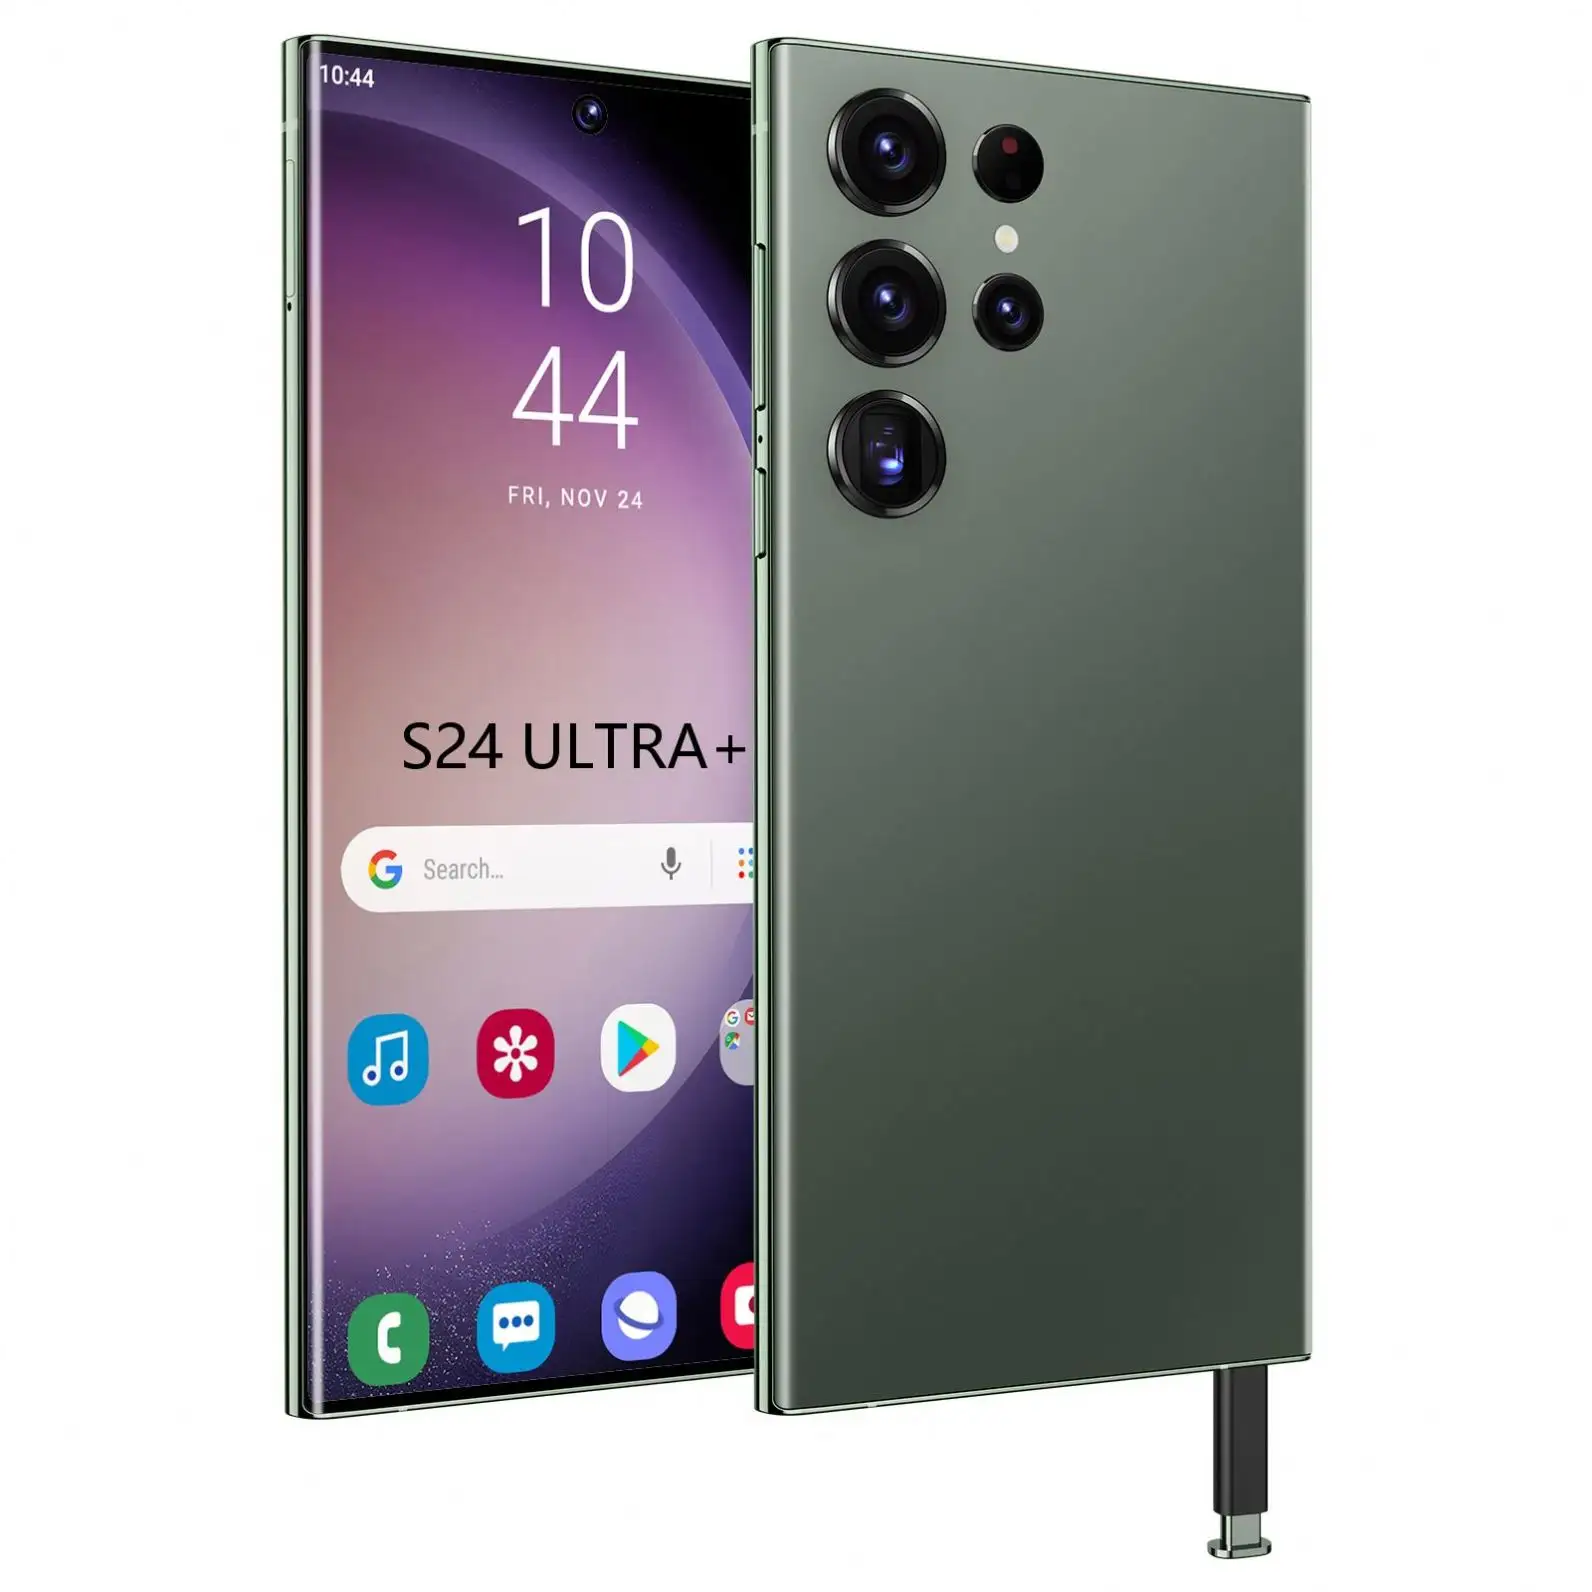 Özel satış 7 ince ve sürüm akıllı telefon şimdi küresel dijital ihracat platformu S24 Ultra üzerinde mevcut